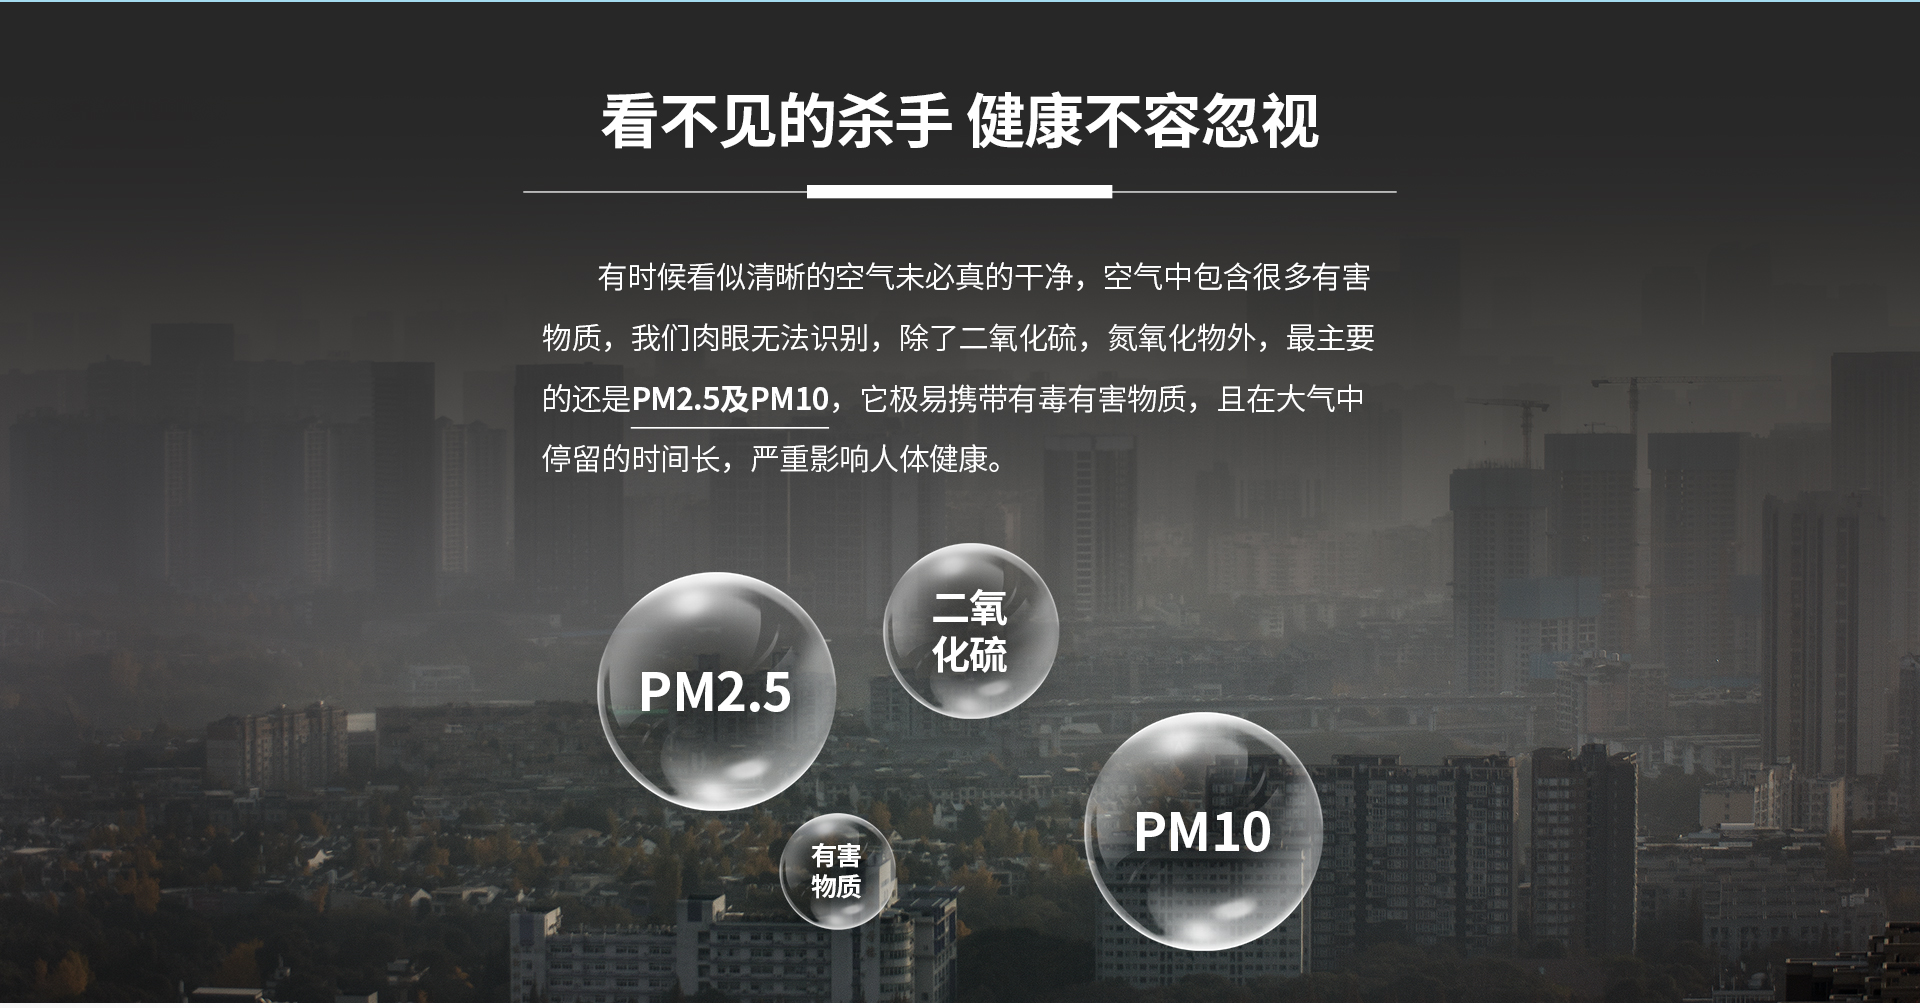 PM2.5无线智能检测手持仪